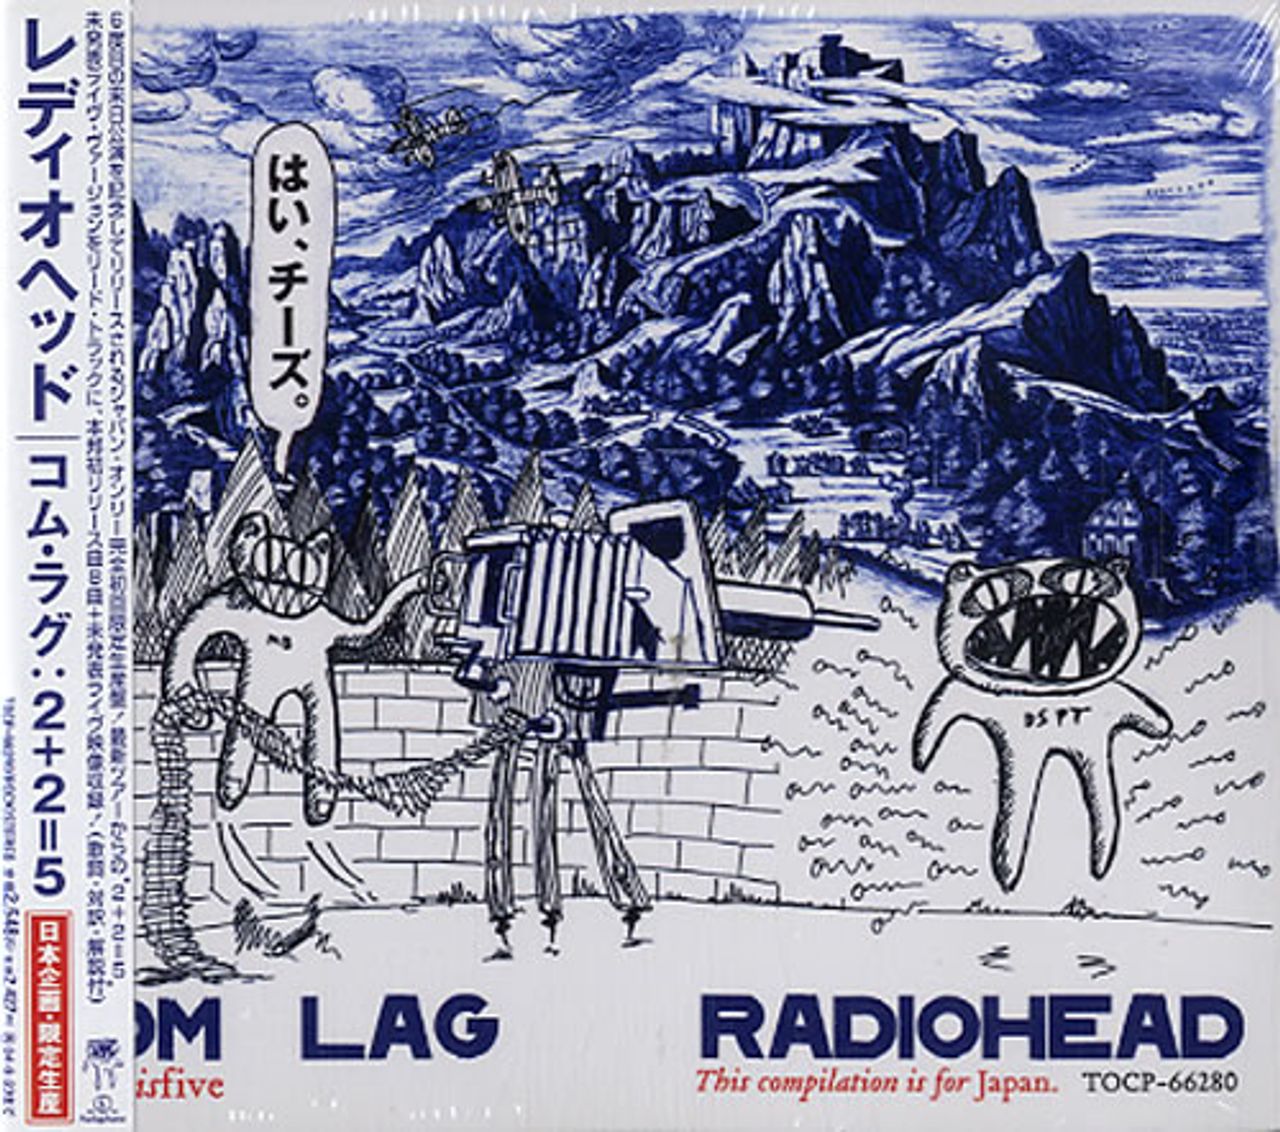 Radiohead Com Lag 2+2=5 - Sealed Japanese CD album — RareVinyl.com